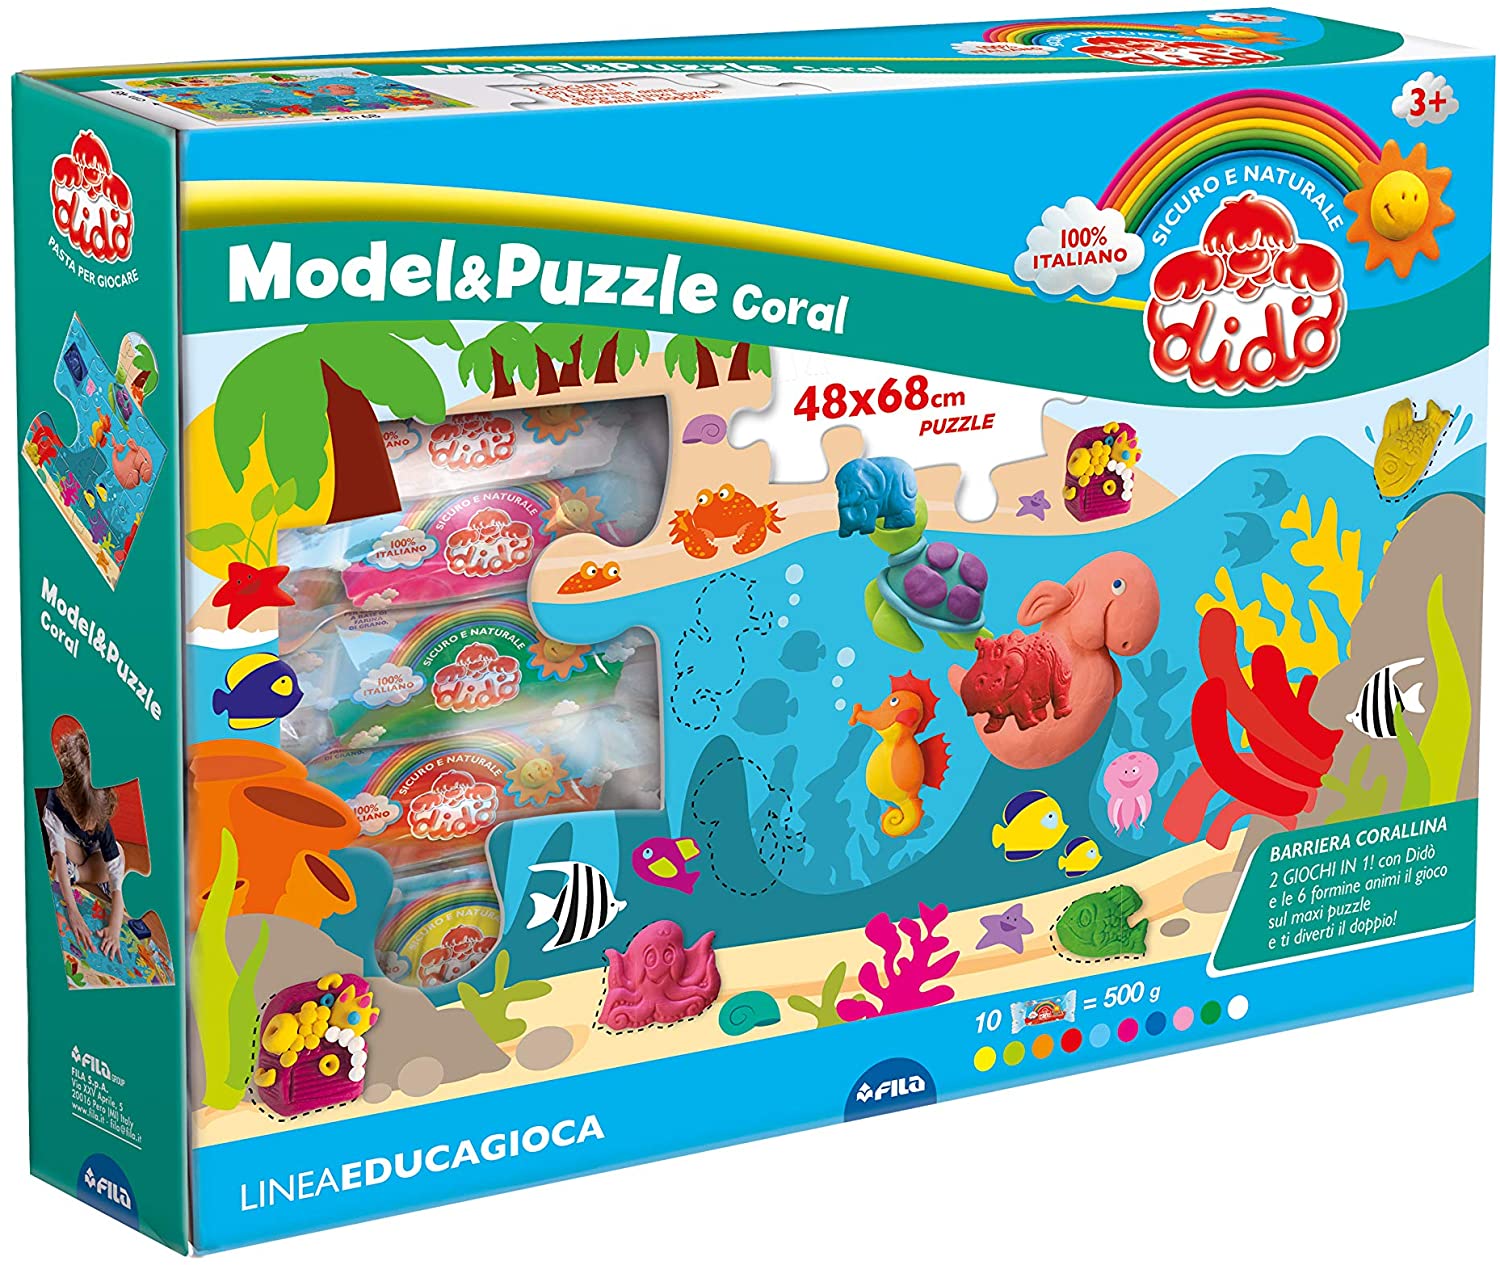 Model E Puzzle Corallo Dido toysvaldichiana.it 